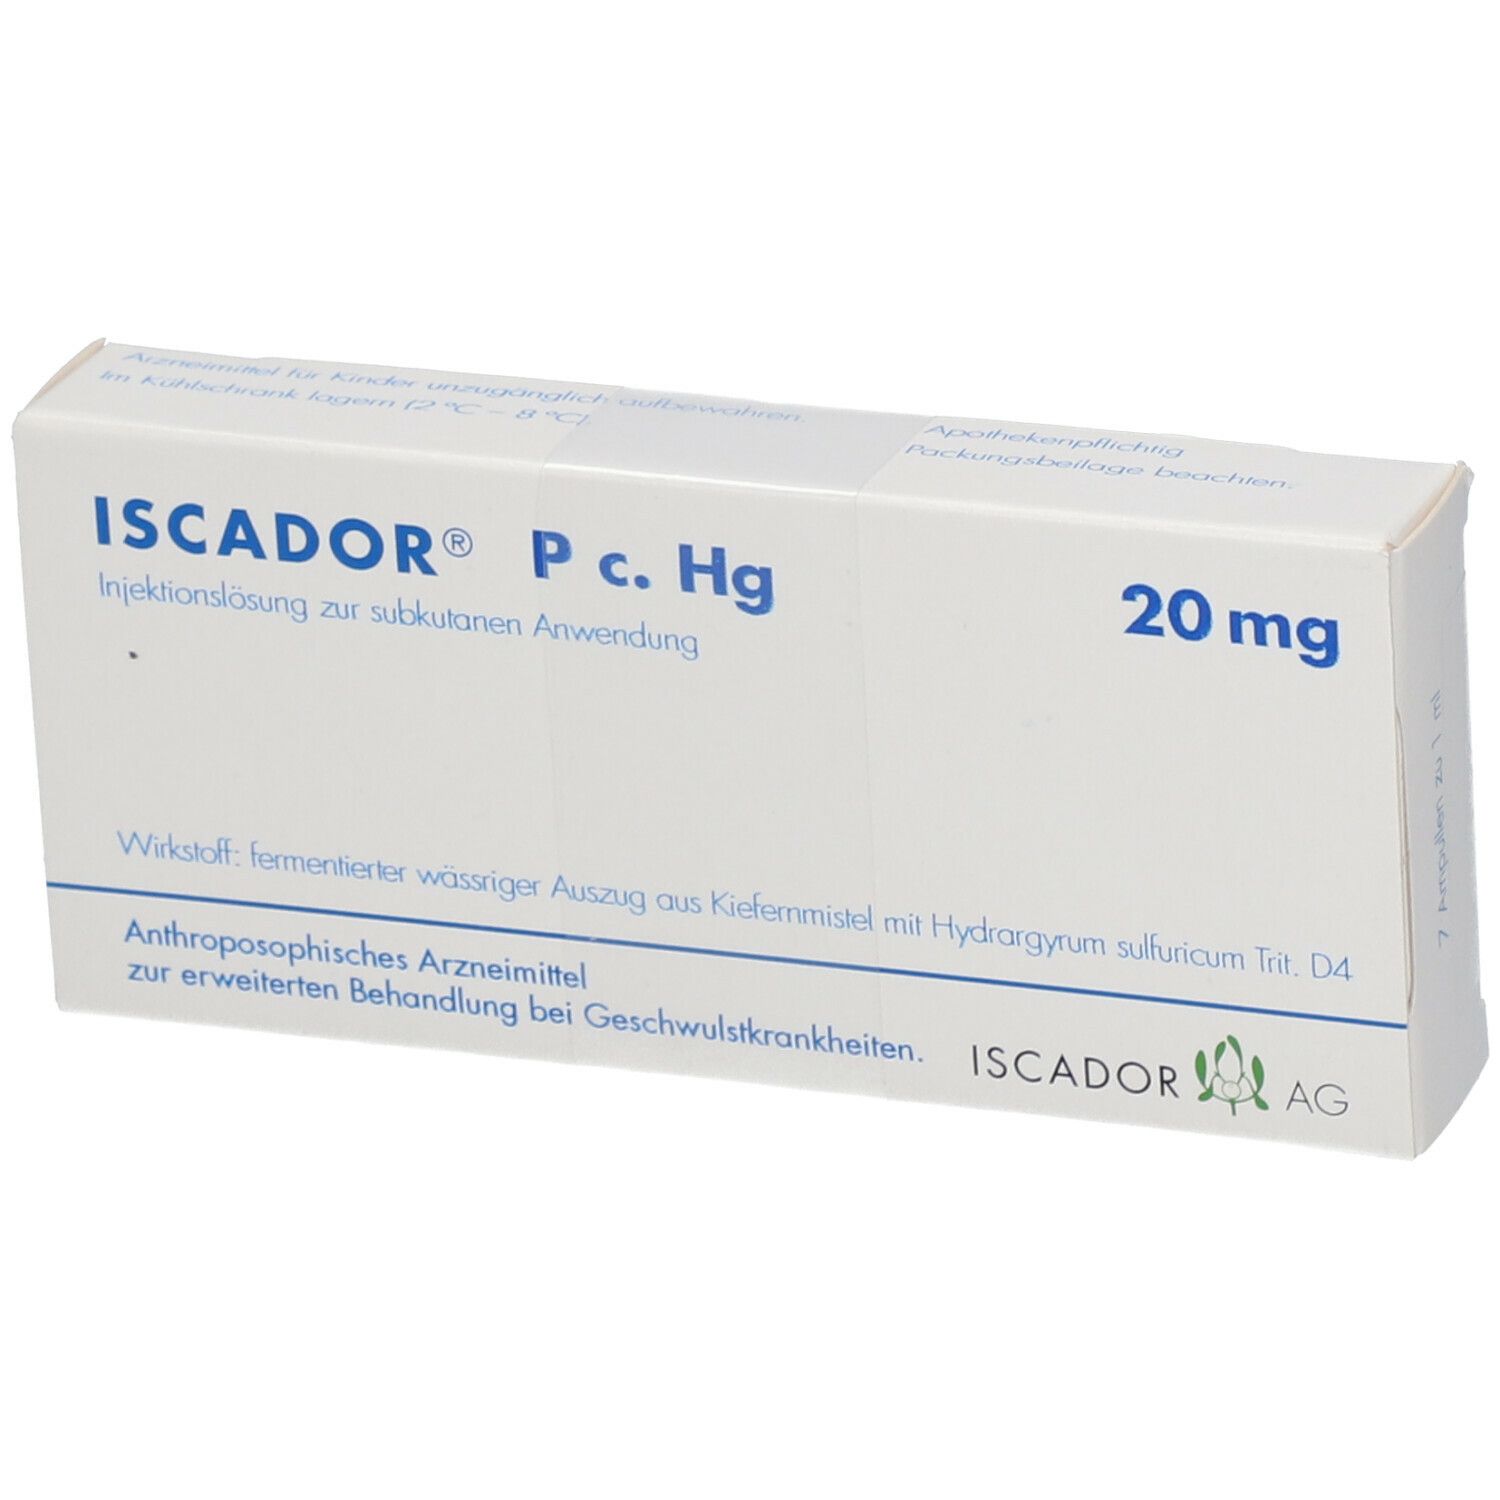 ISCADOR® P c. Hg 20 mg